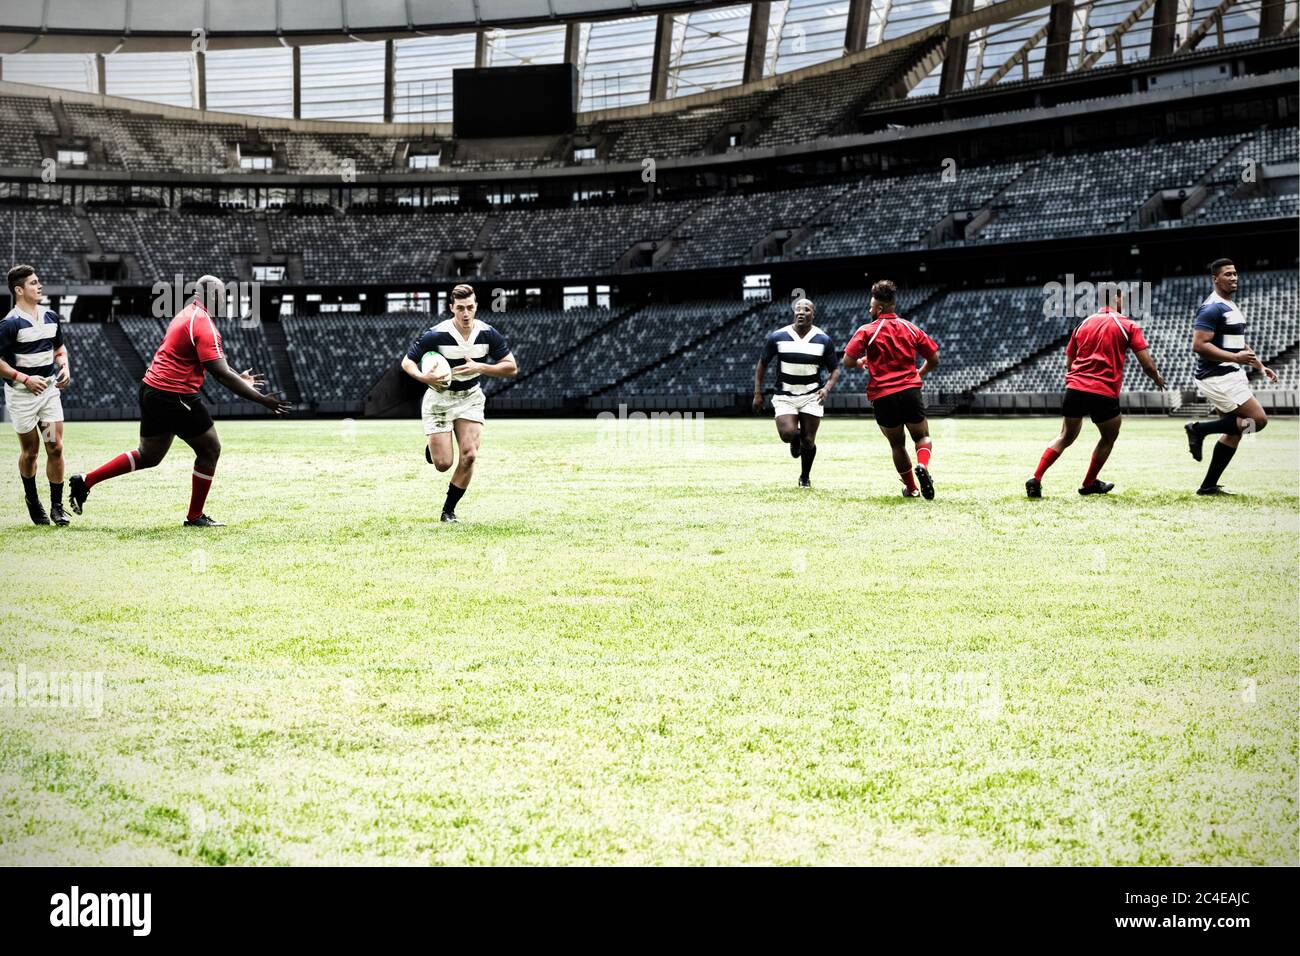 Immagine digitale composita di una squadra di rugby che gioca a rugby nello stadio sportivo Foto Stock